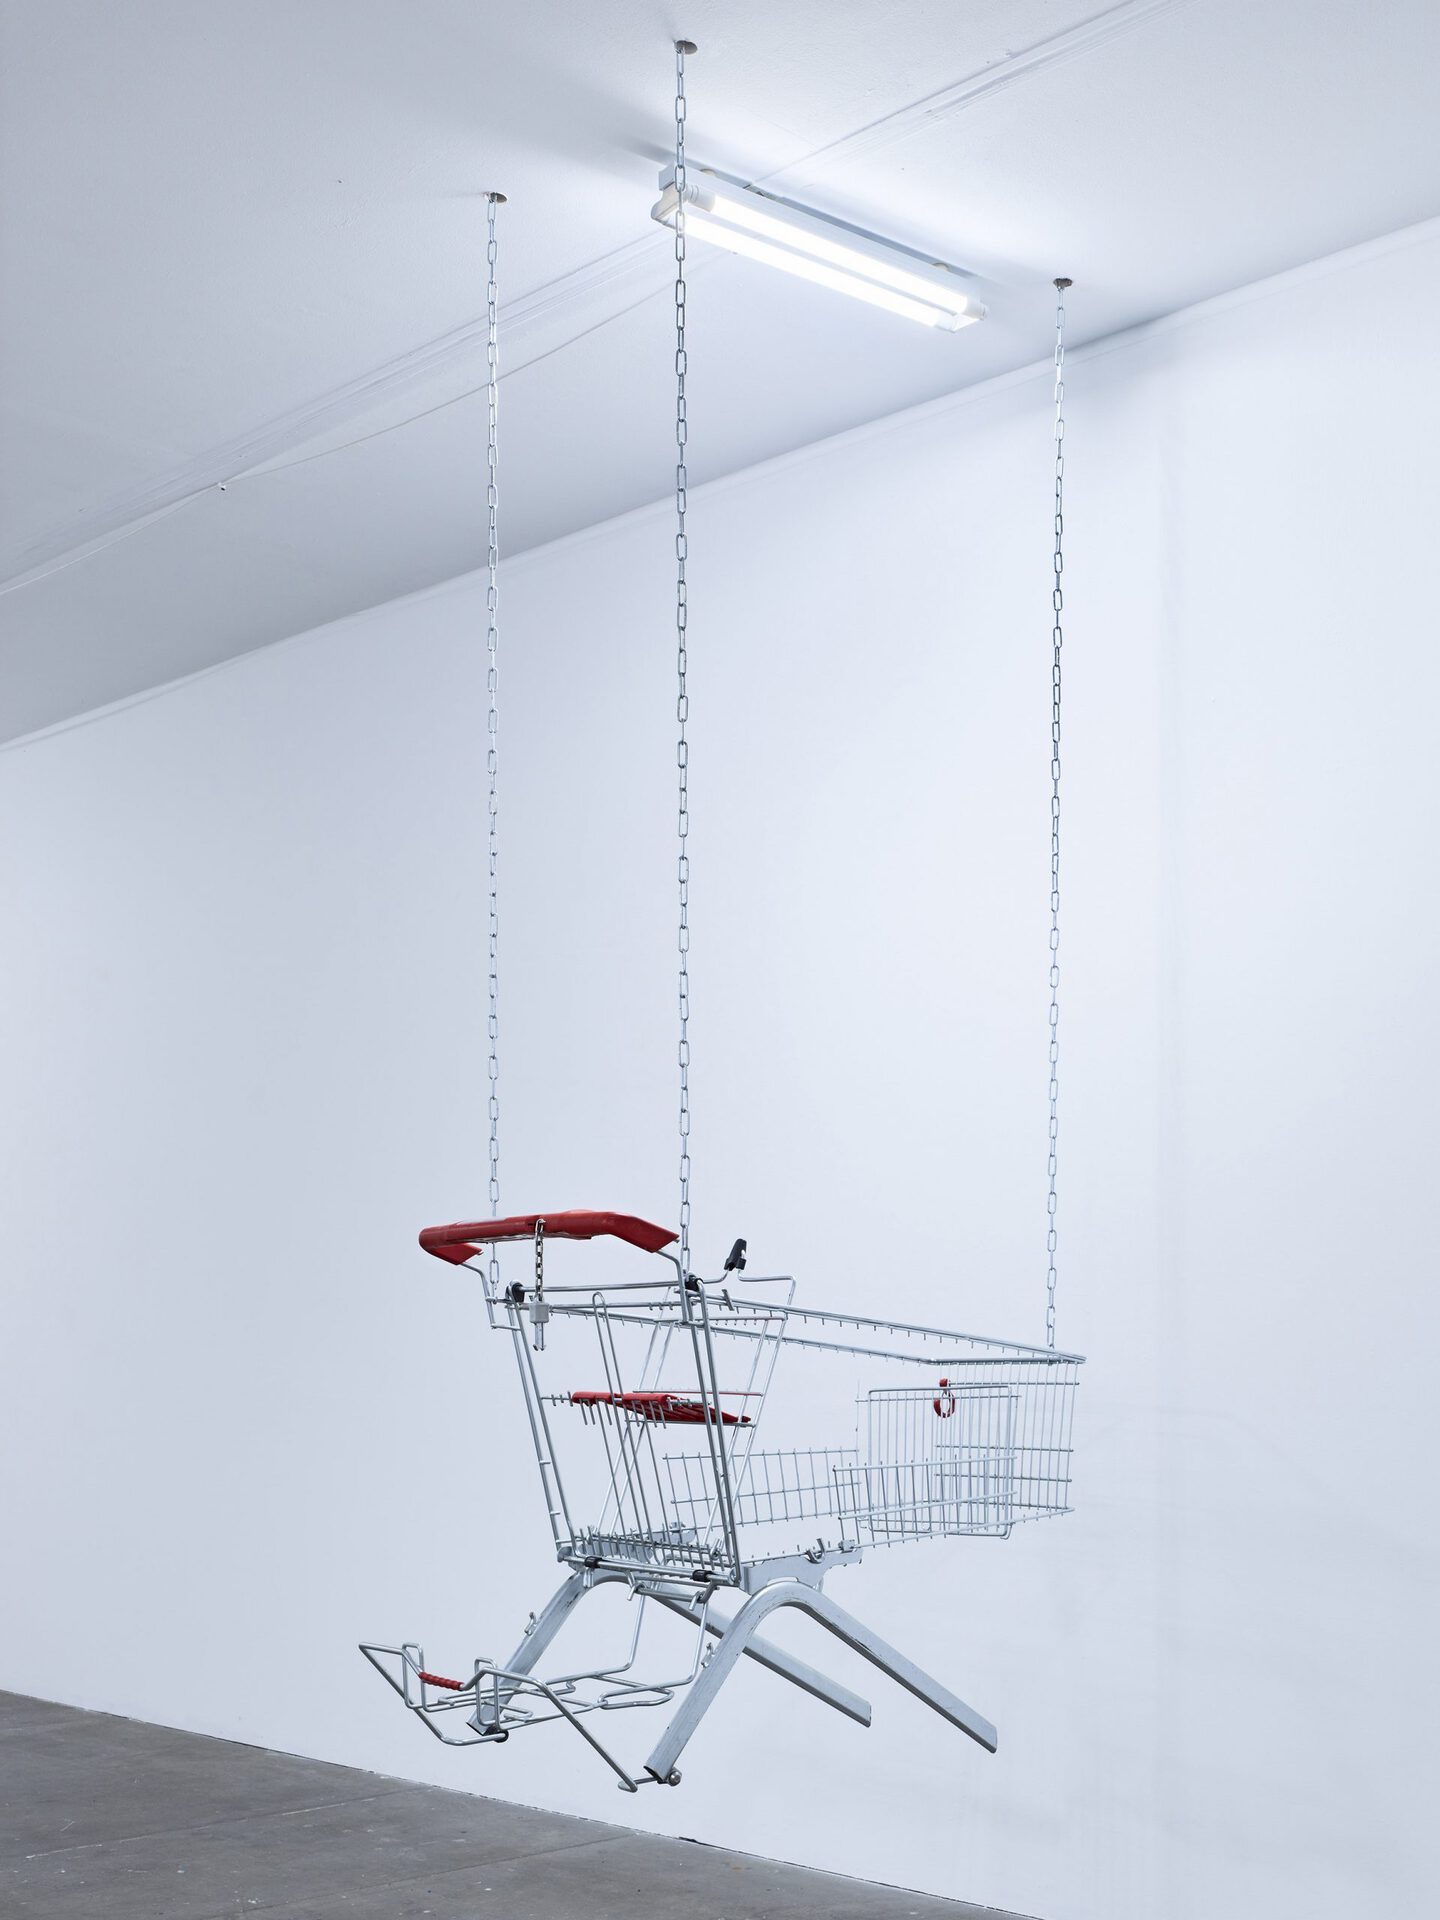 Lars Karl Becker, Tap Water from Coke Bottles, 2021, stainless steel, shopping carts, chains, led fluorescent tube. Photo: Roman Mensing, artdoc.de